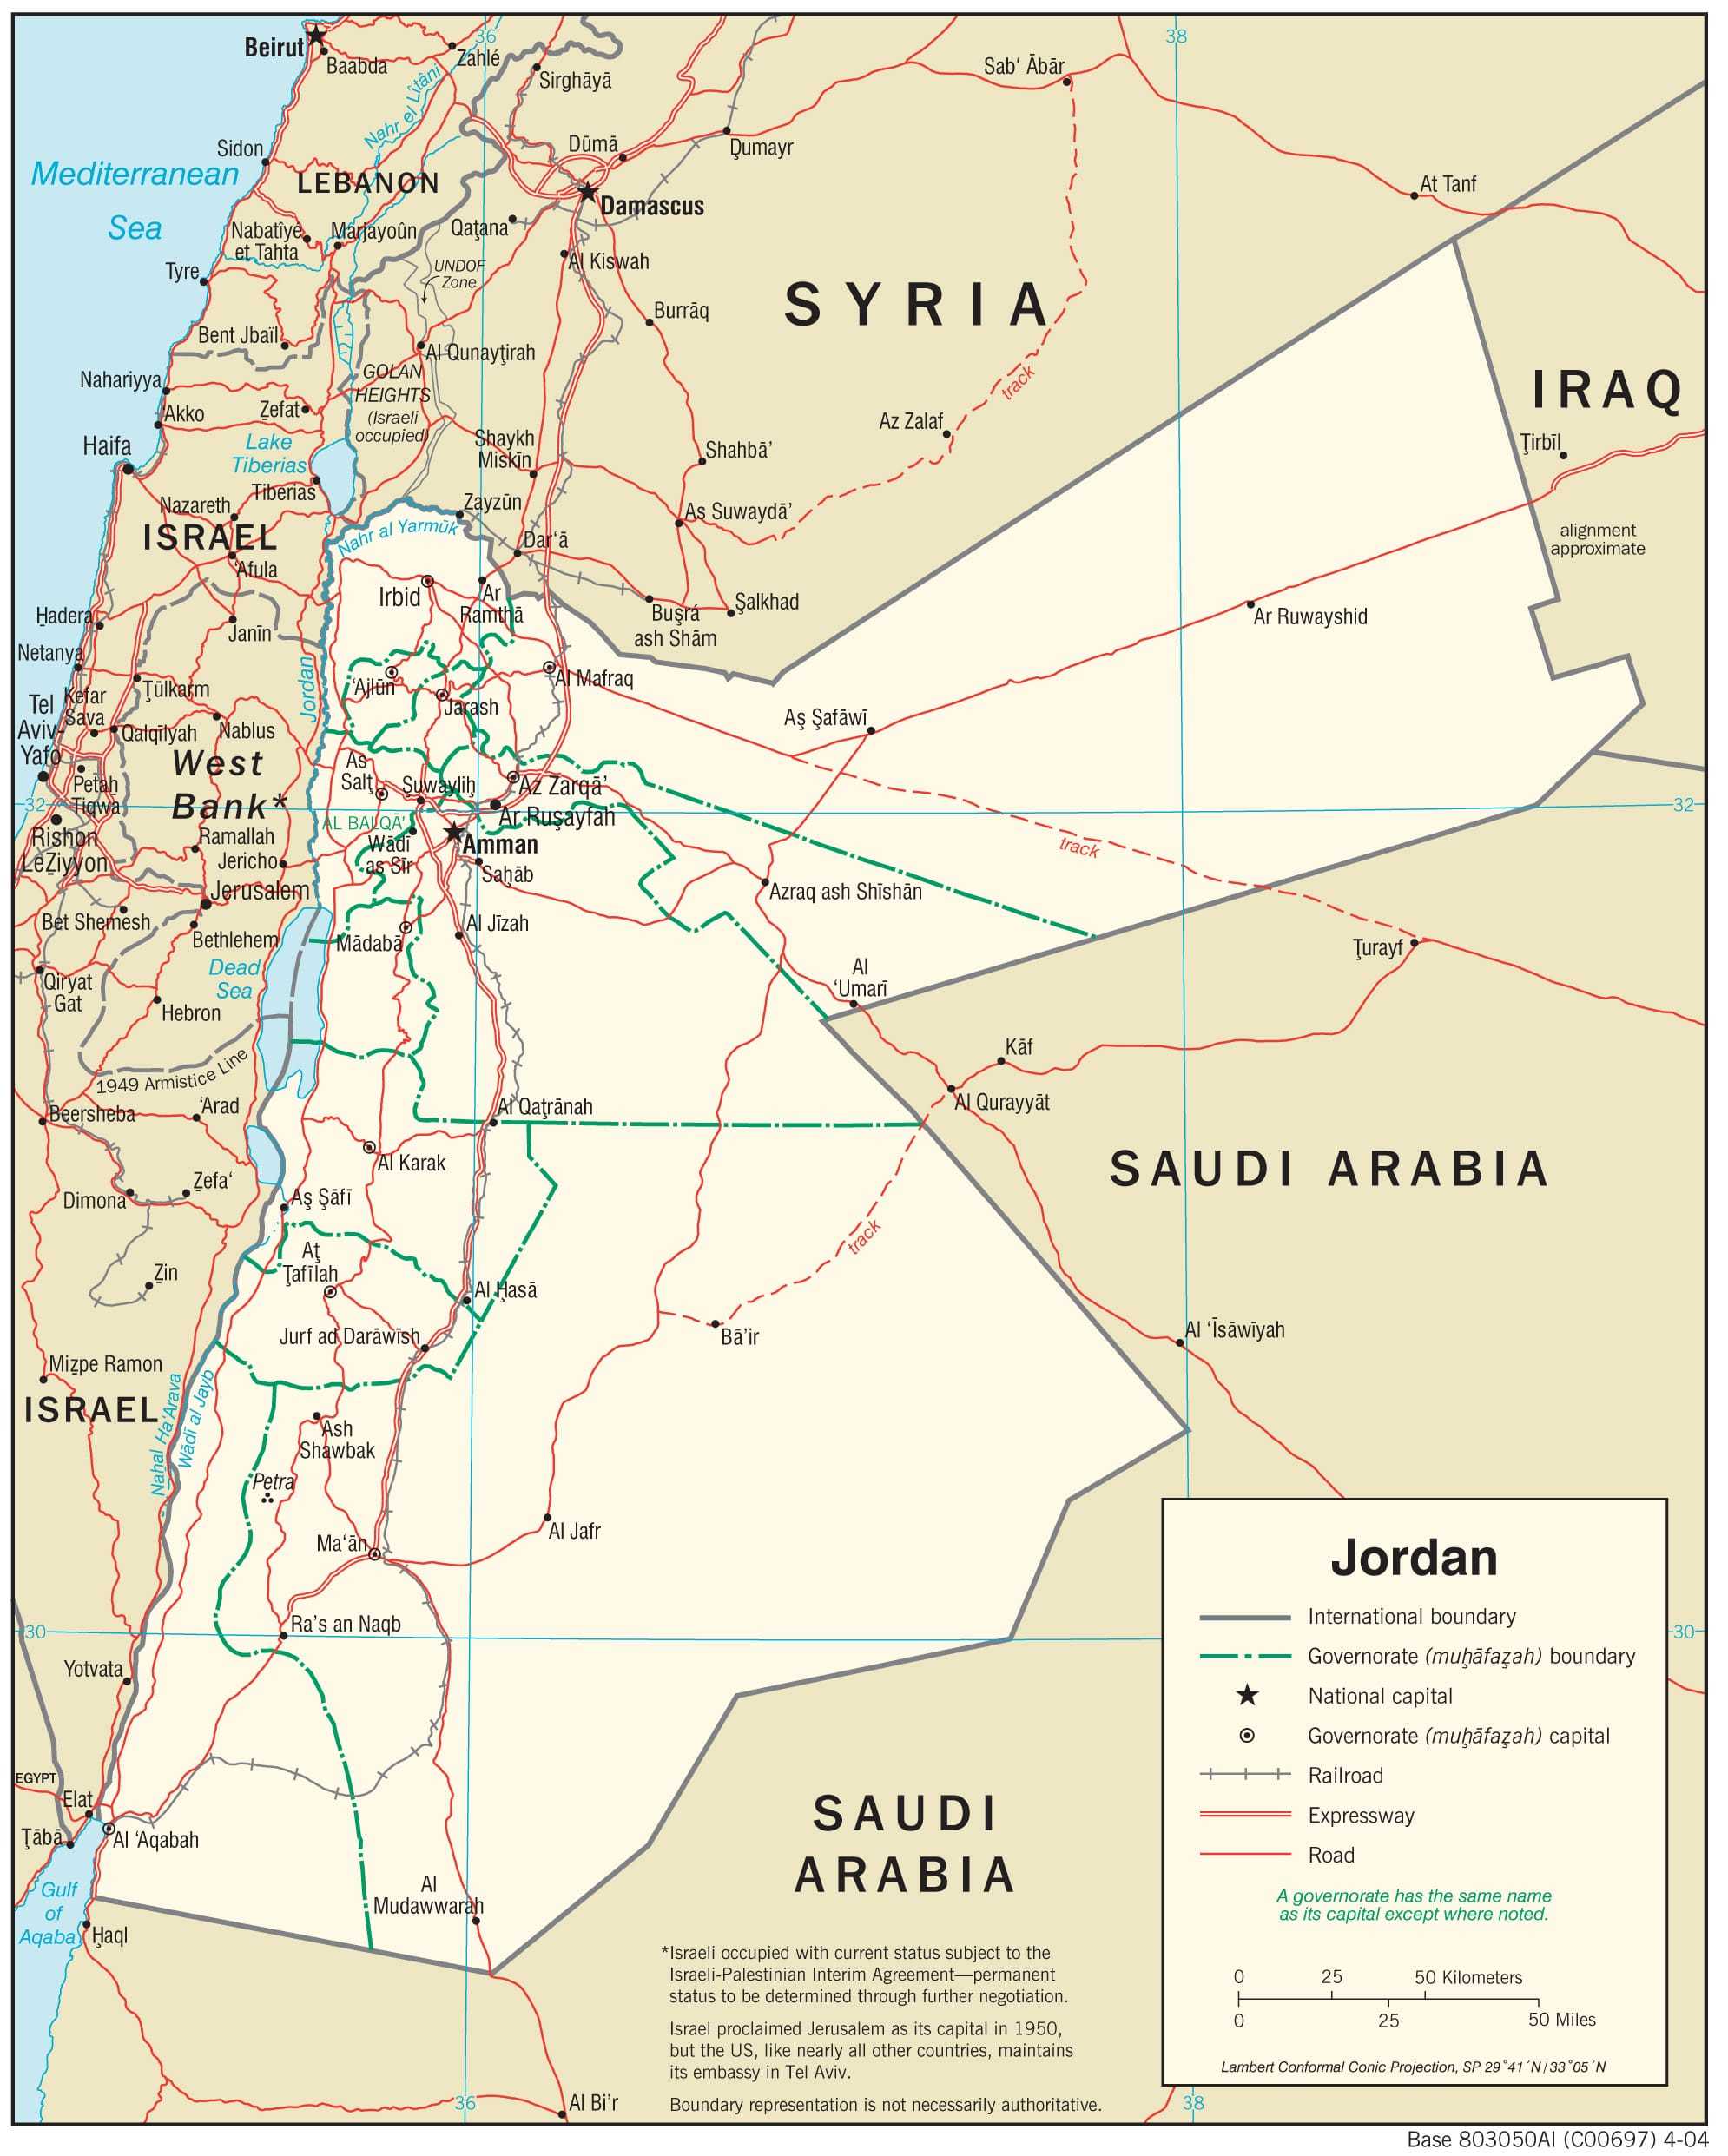 Transportation map of Jordan.